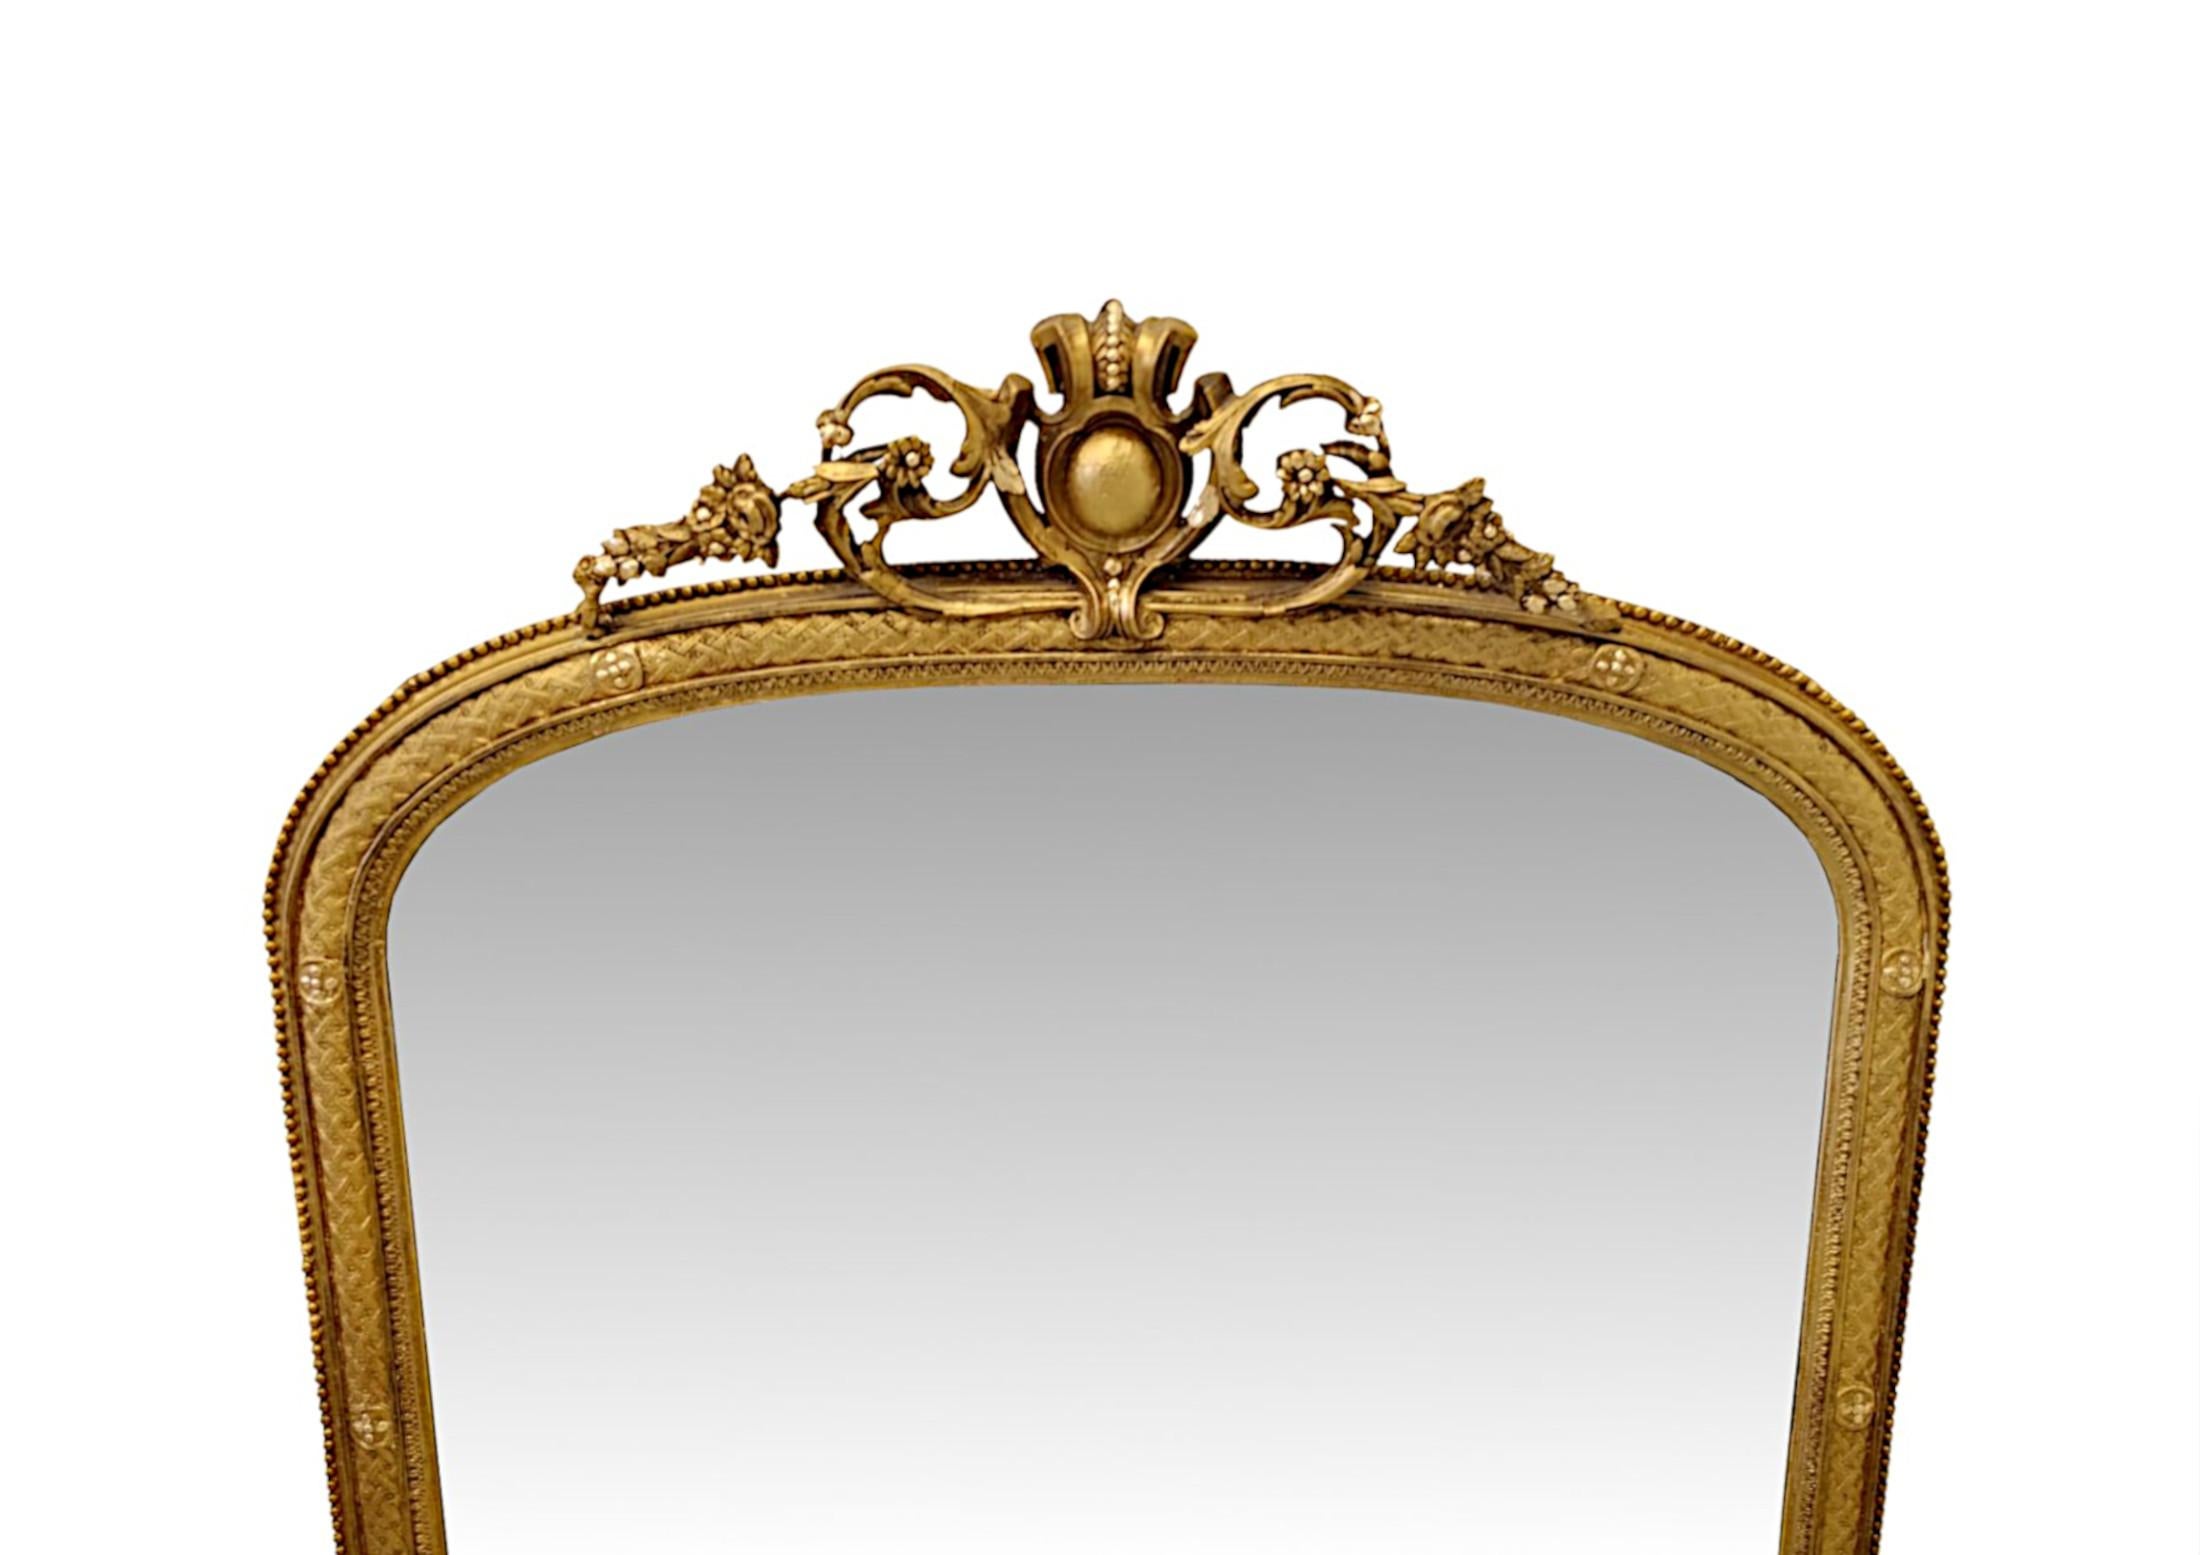 Eine fabelhafte 19. Jahrhundert vergoldet overmantel Spiegel fein von Hand geschnitzt und von außergewöhnlicher Qualität.  Die spiegelnde Glasplatte in Bogenform befindet sich in einem beeindruckenden, geformten und geriffelten Rahmen aus